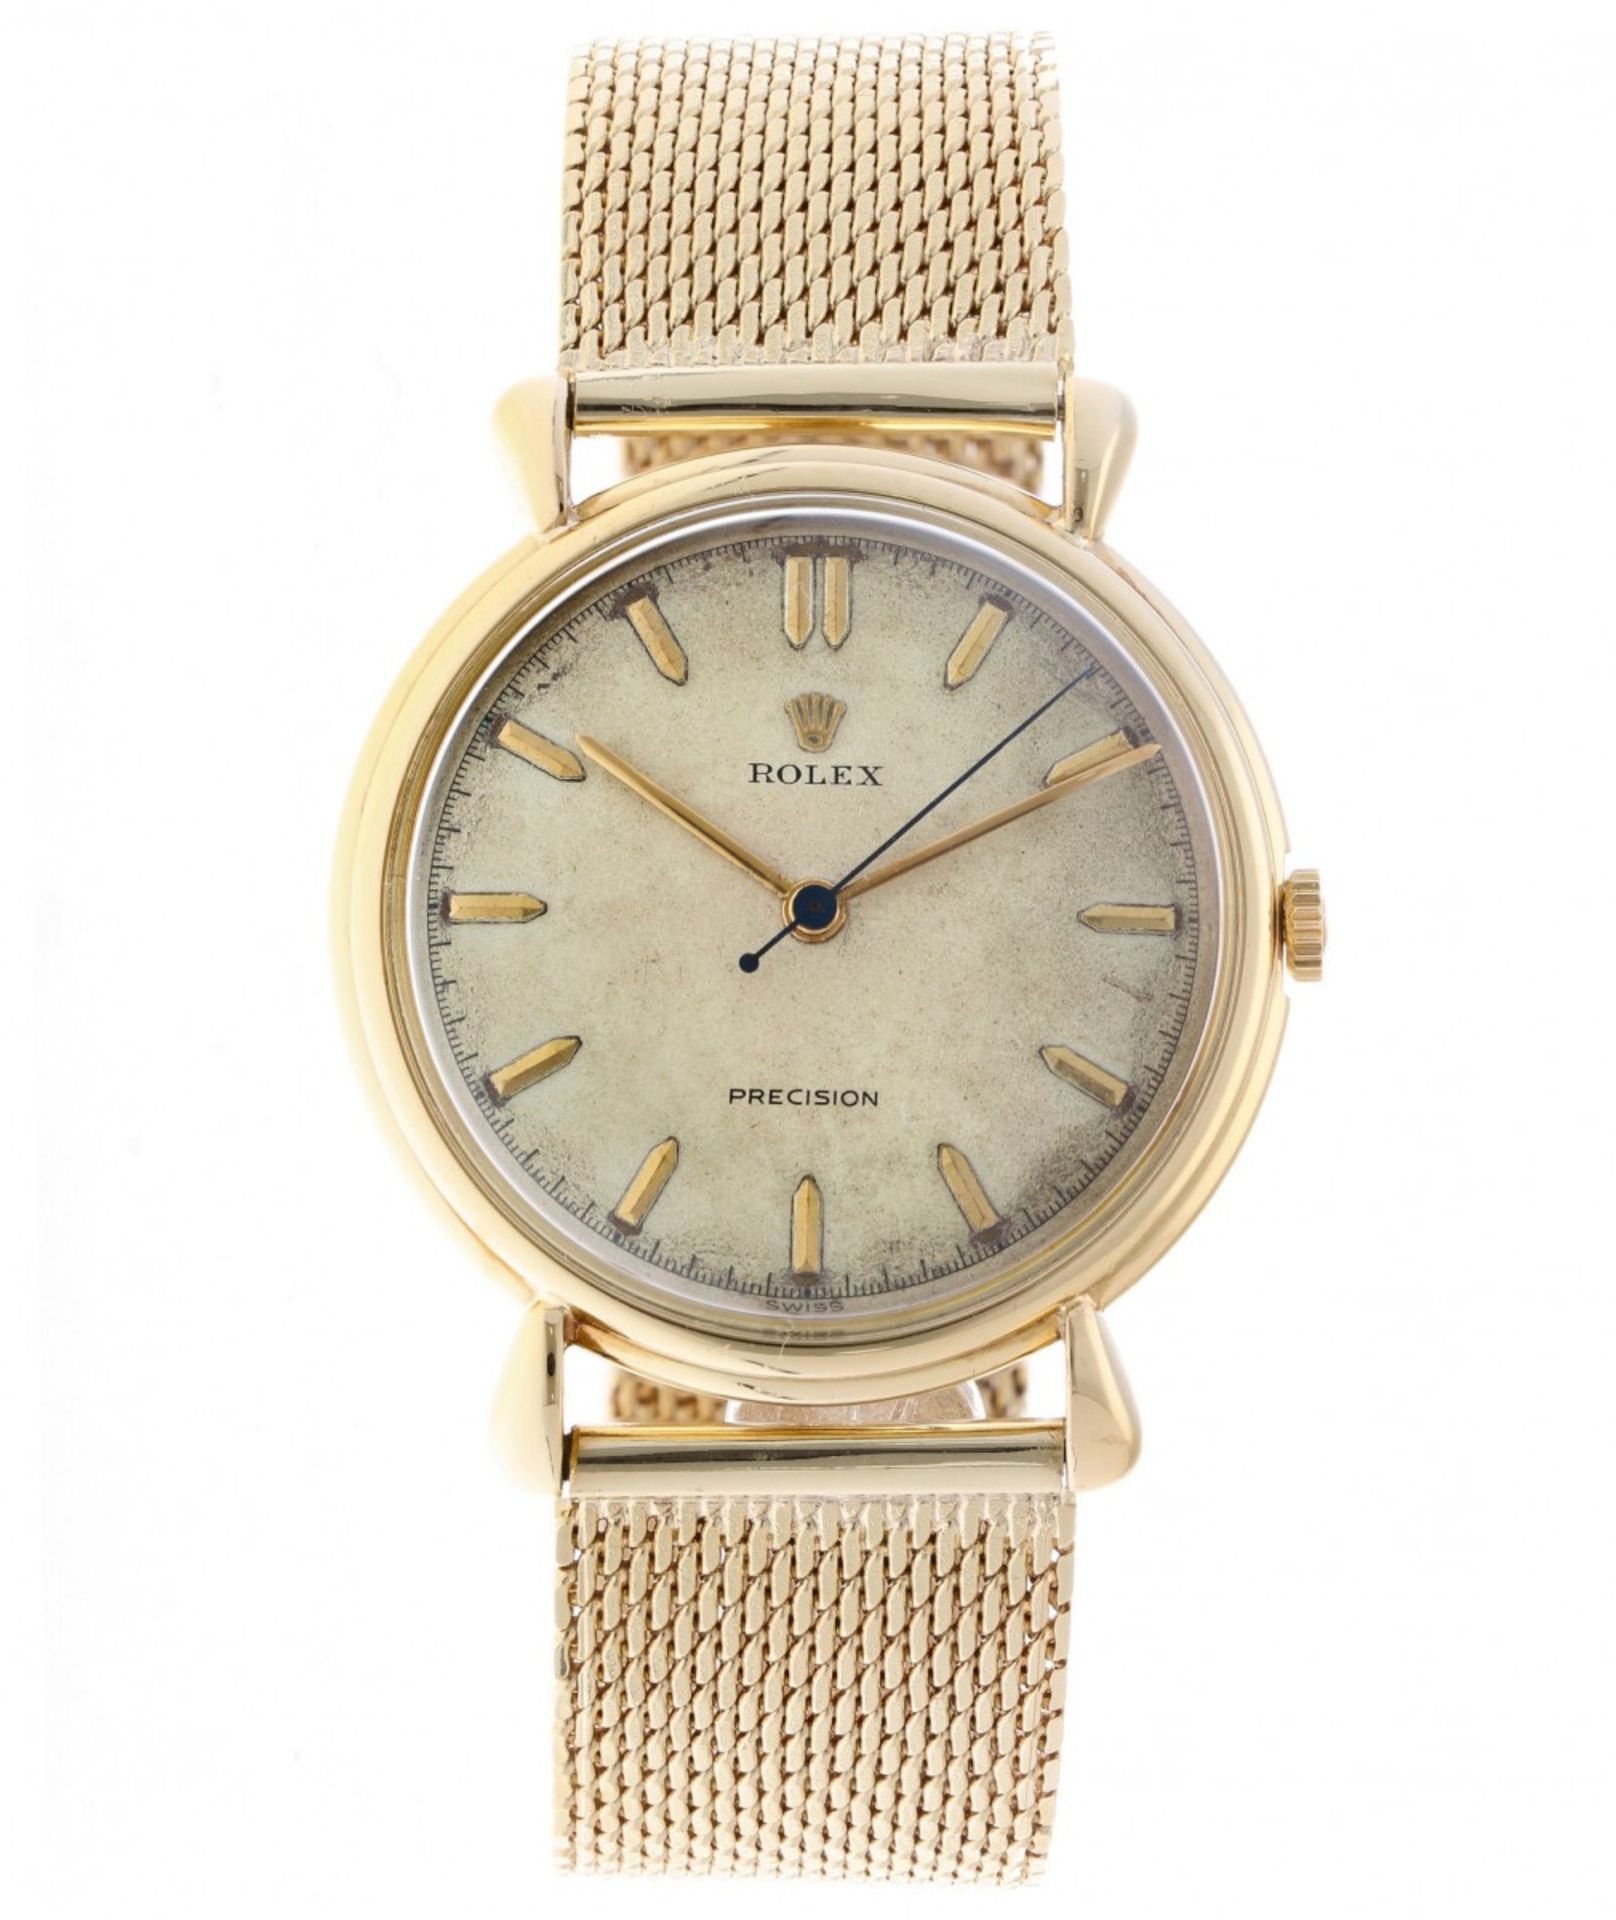 Rolex Precision 4516 - Men's watch - ca. 1950